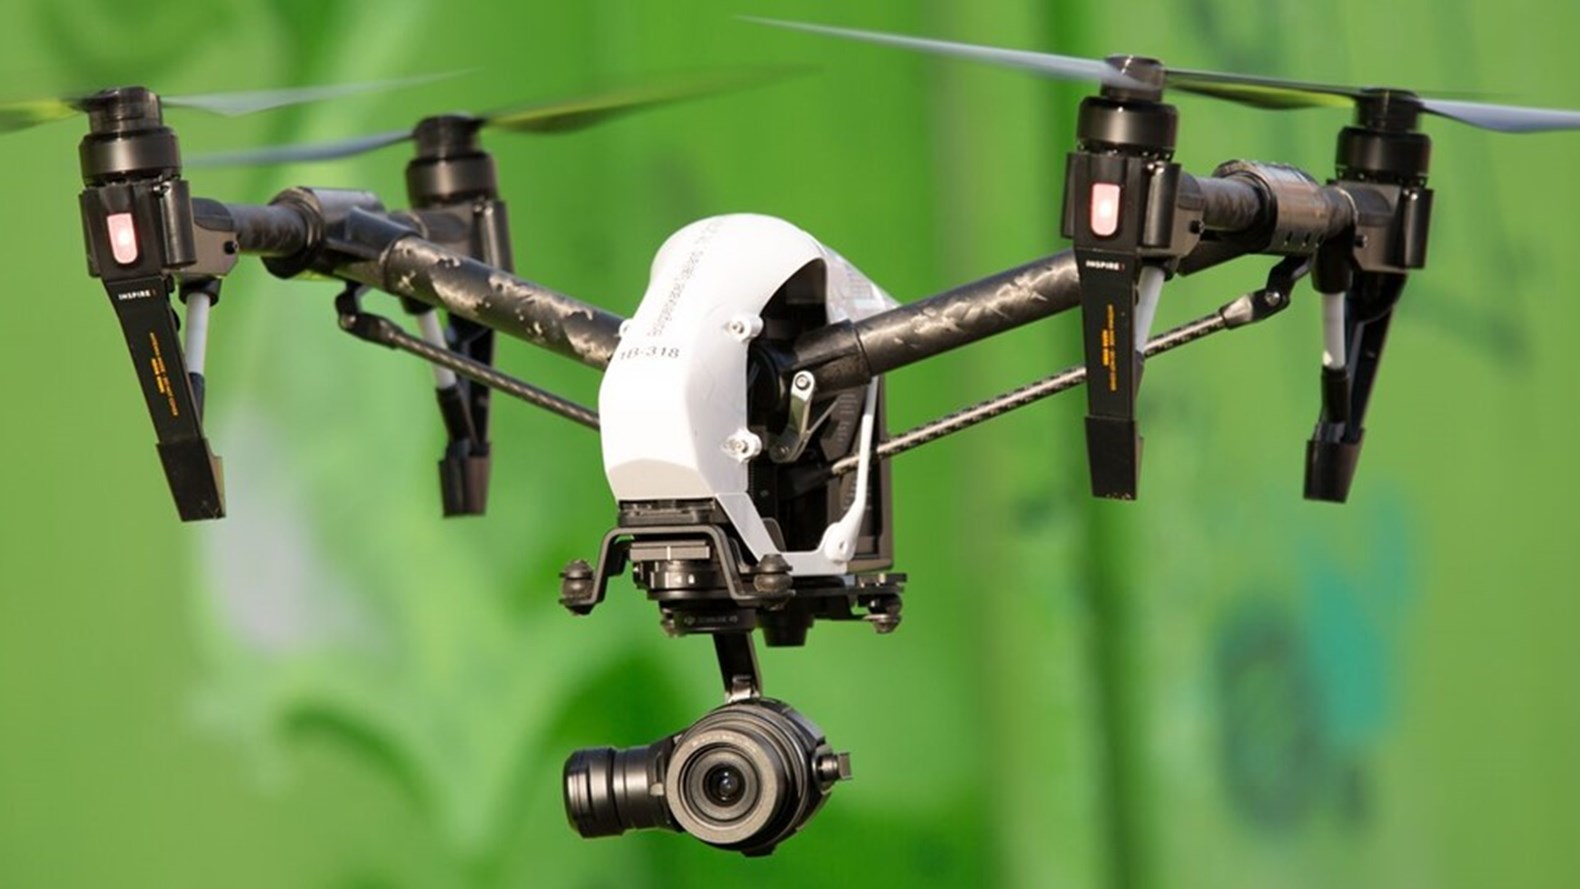 ligegyldighed Tålmodighed smag Boligselskaber flyver besparelser hjem med droner